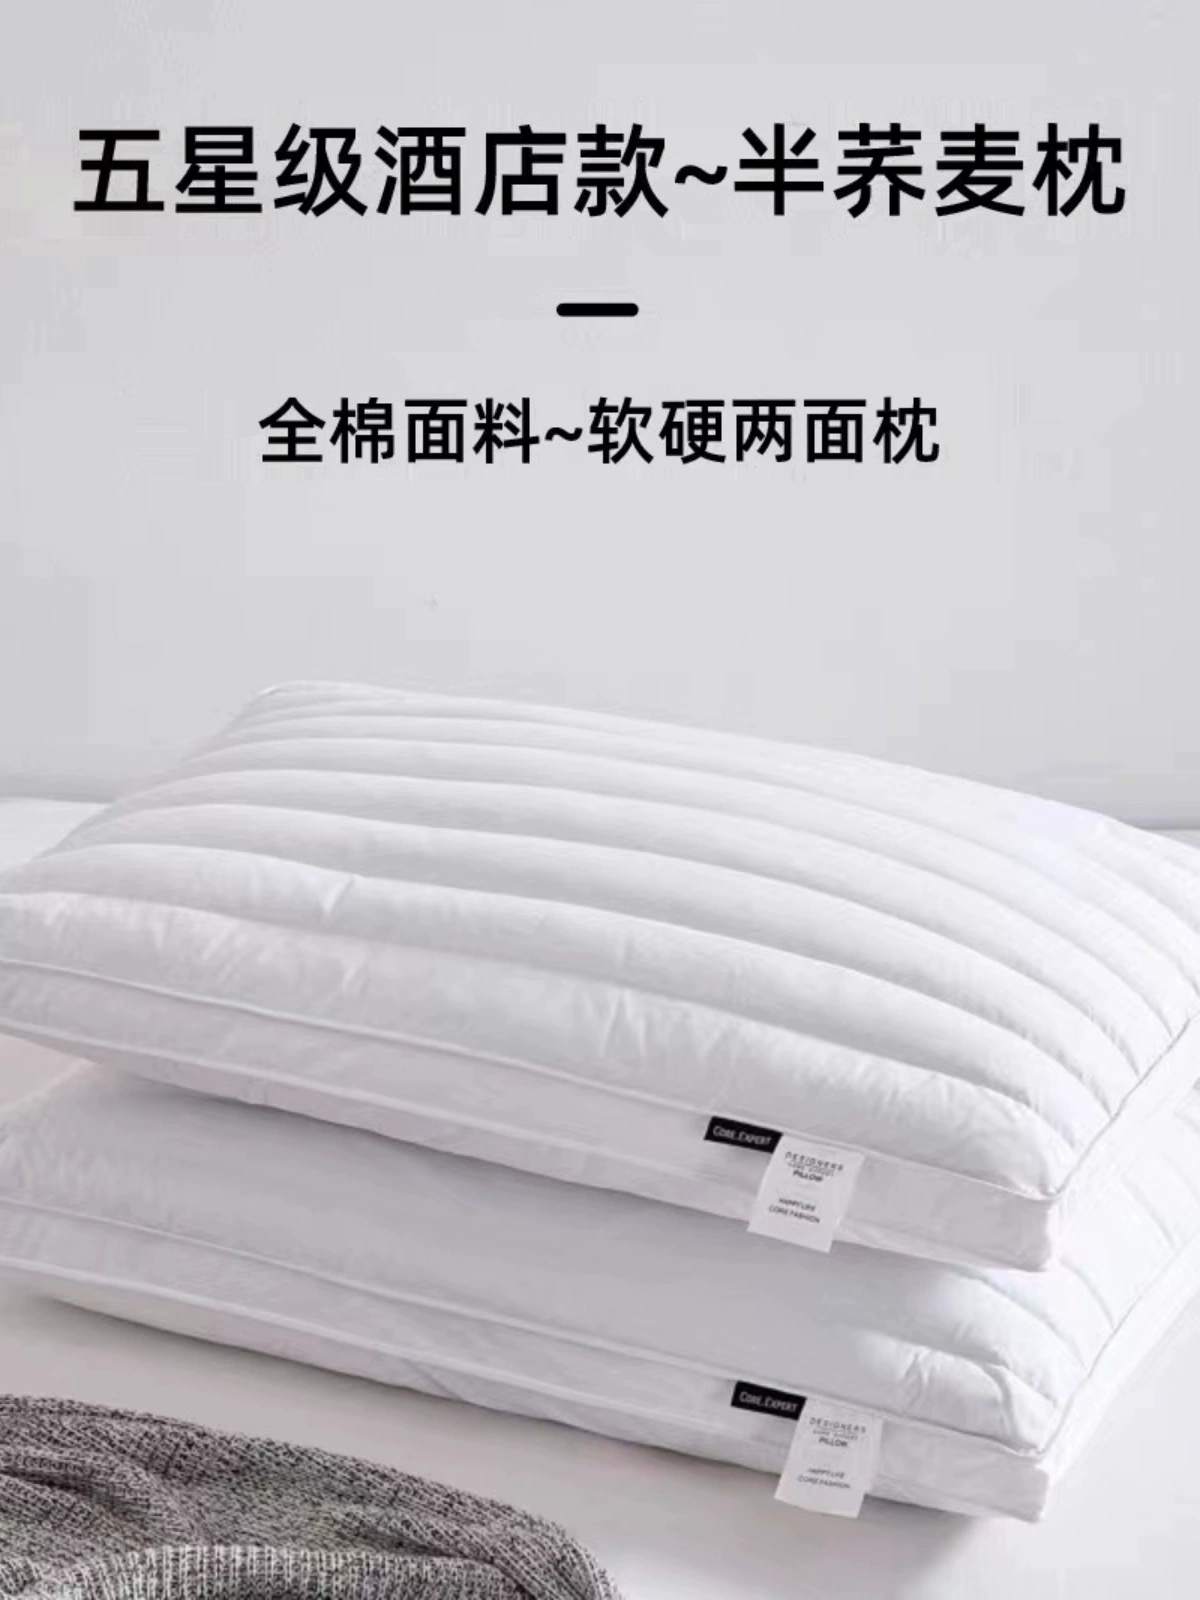 軟硬兩面枕芯蕎麥決明子枕頭 全棉填充物 舒適透氣 多功能支撐